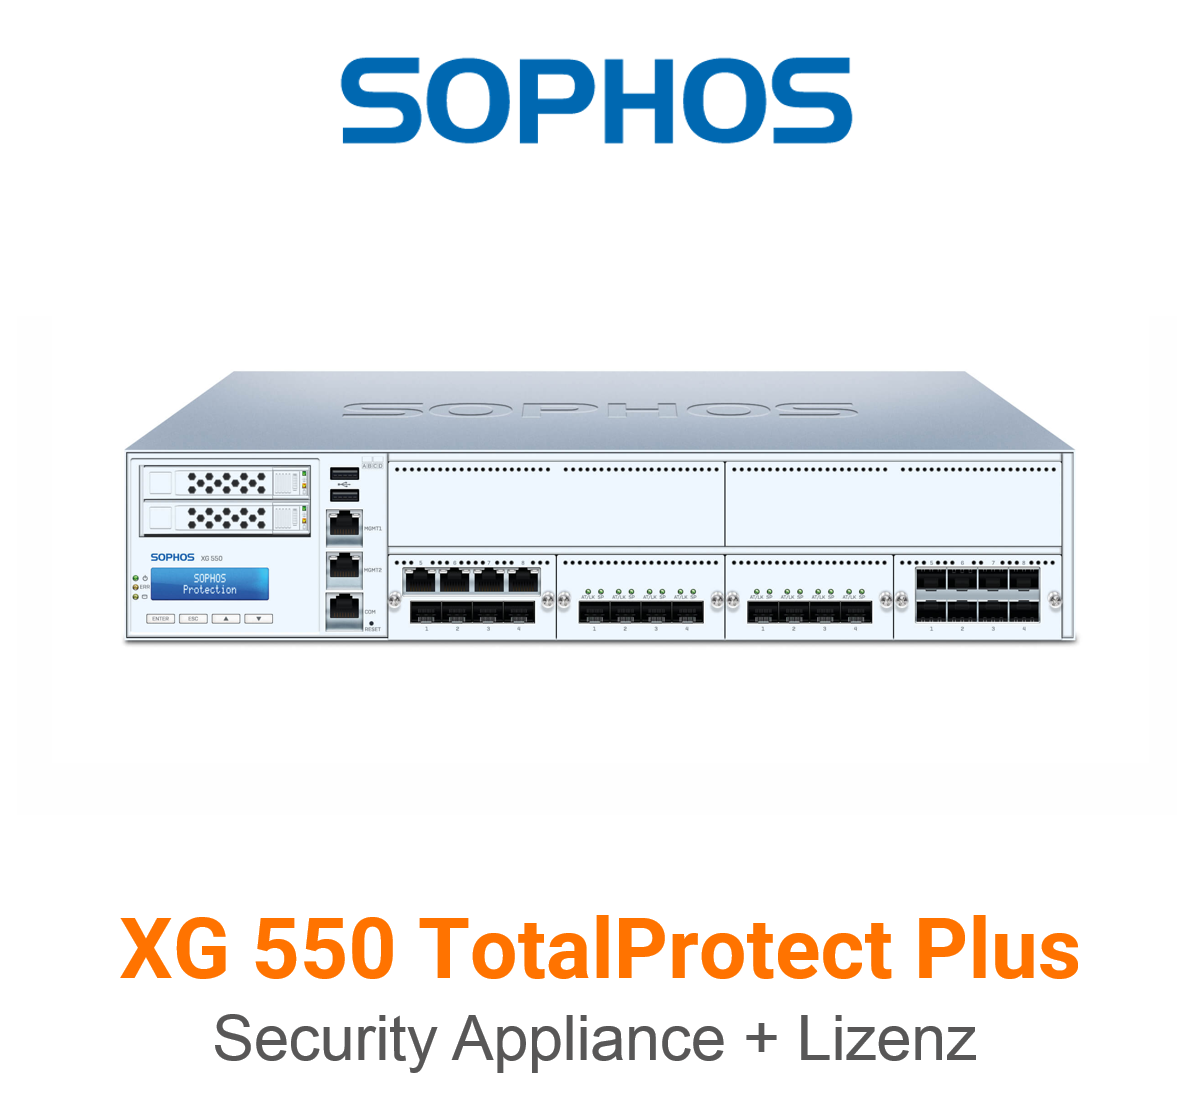 Sophos XG 550 TotalProtect Plus Bundle (Hardware + Lizenz)